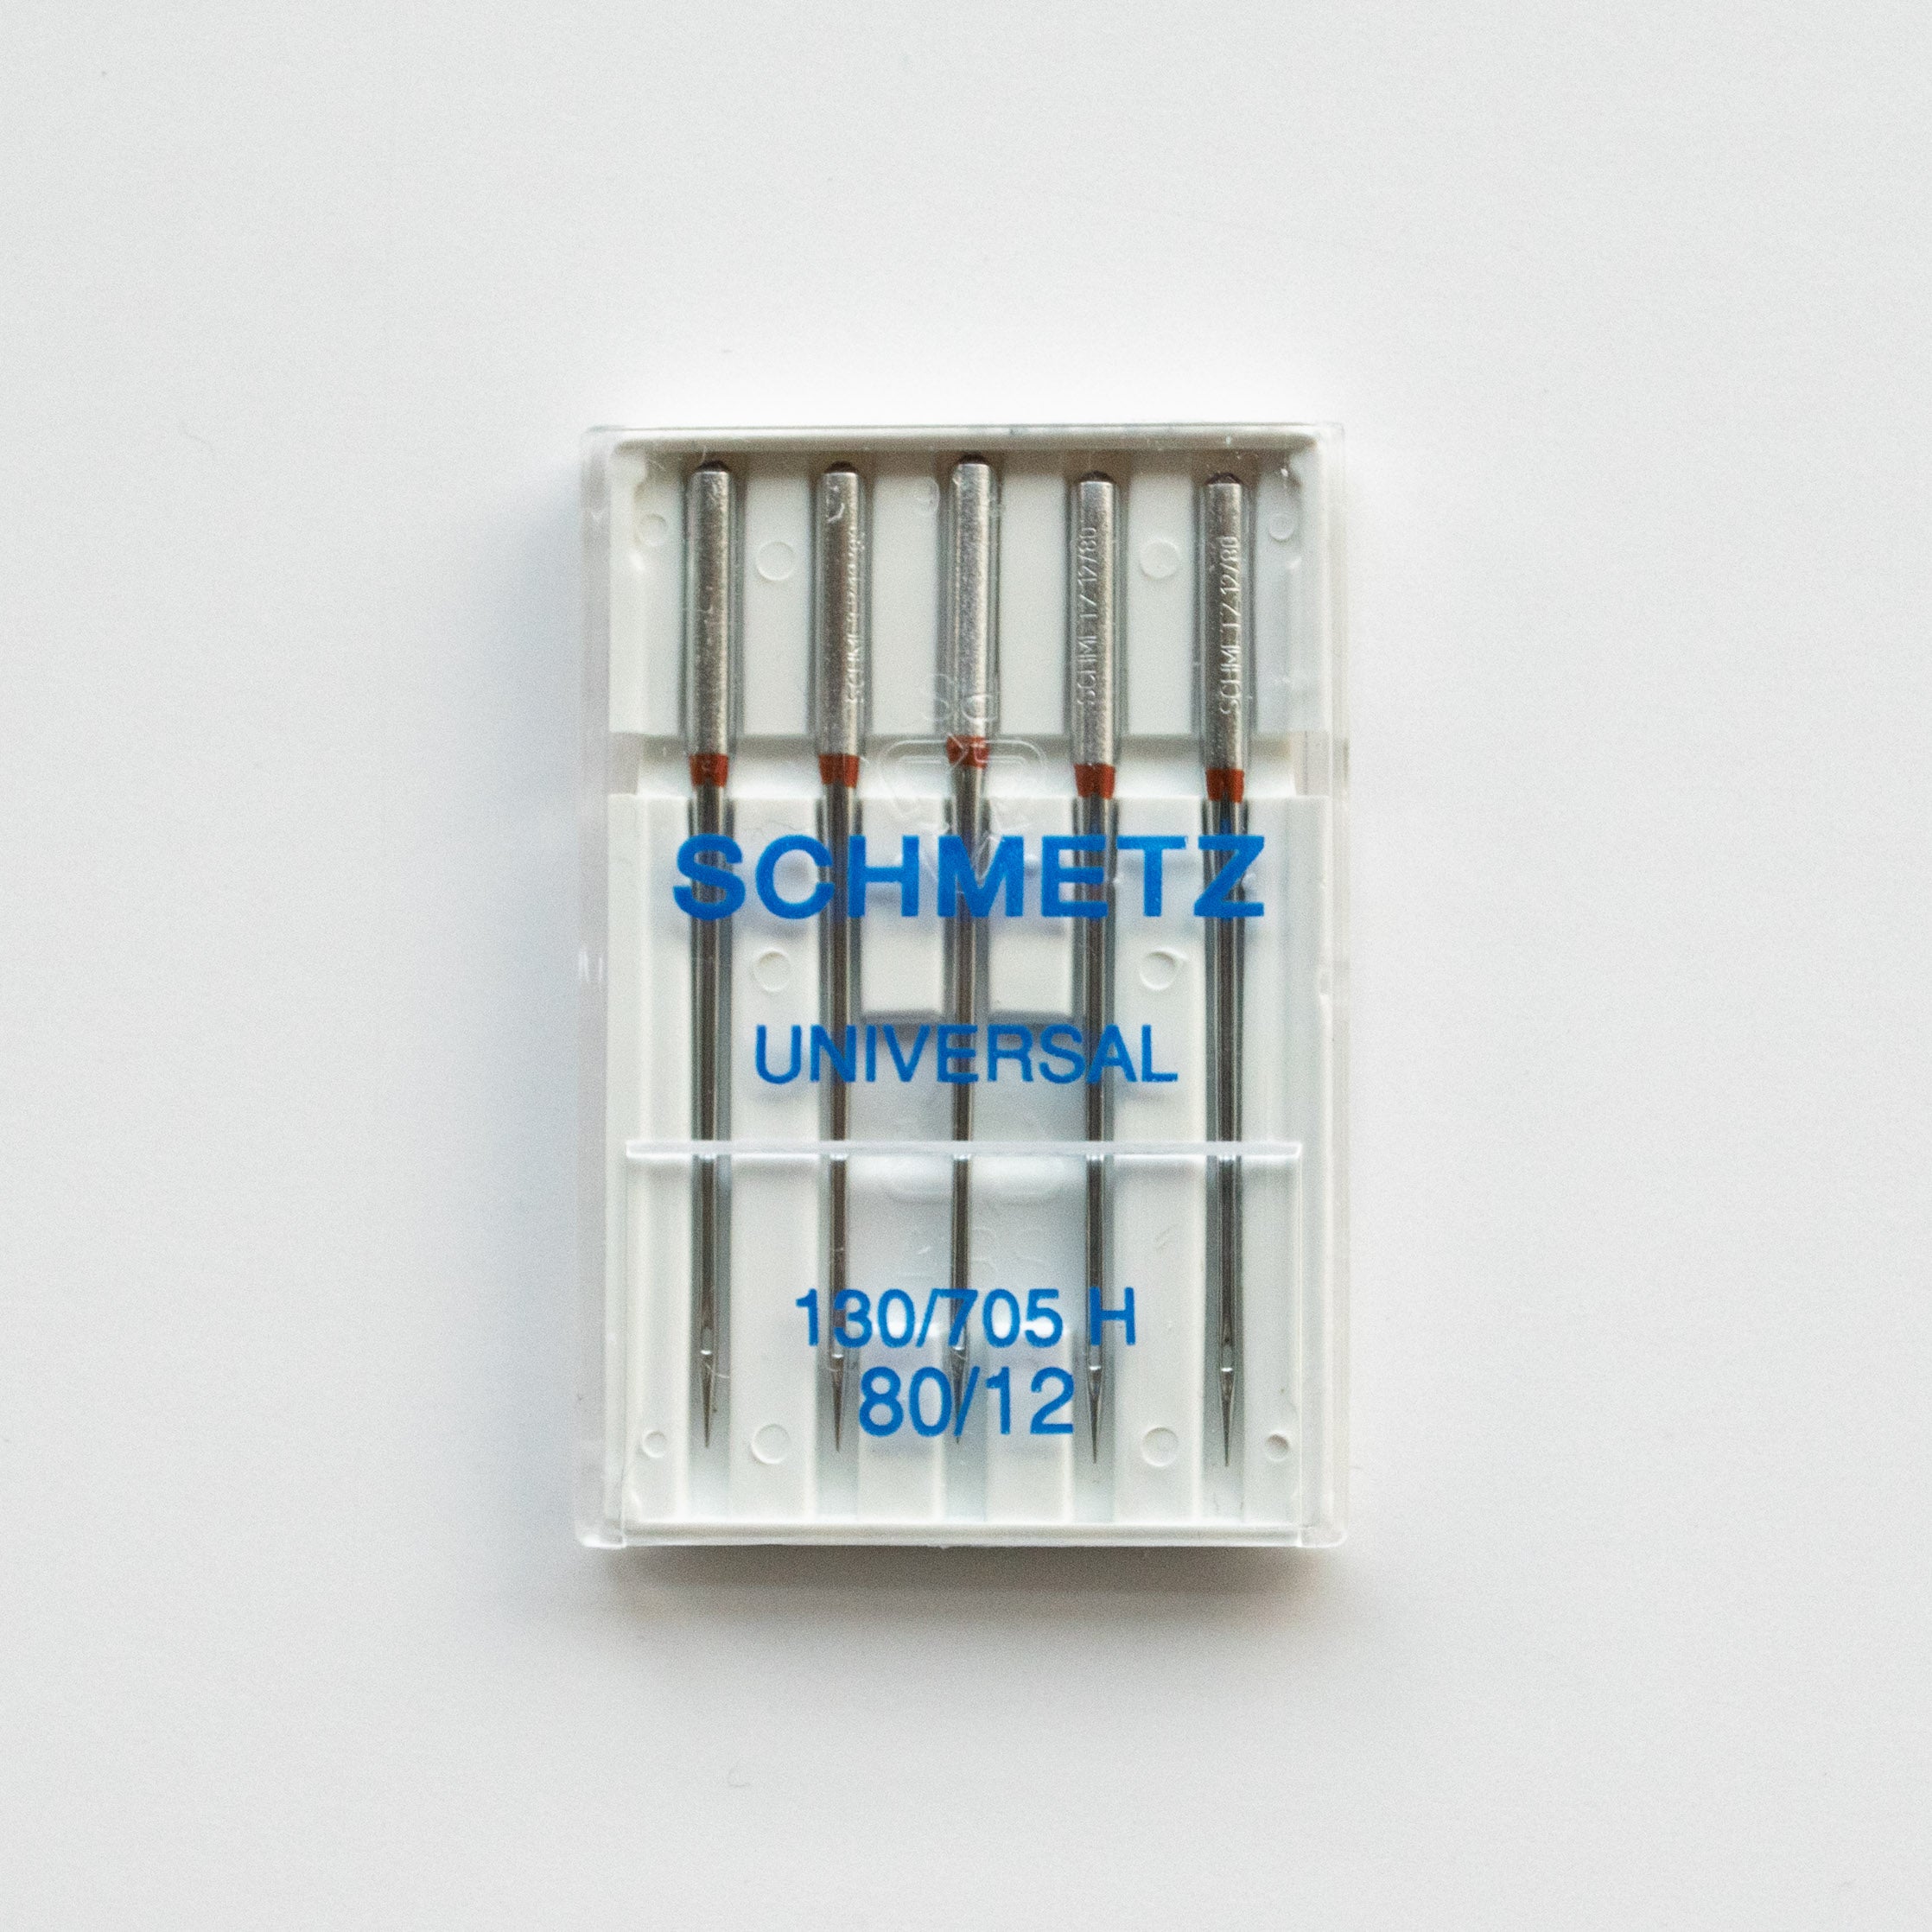 Machine Needles - Schmetz Universal 80/12 - MaaiDesign